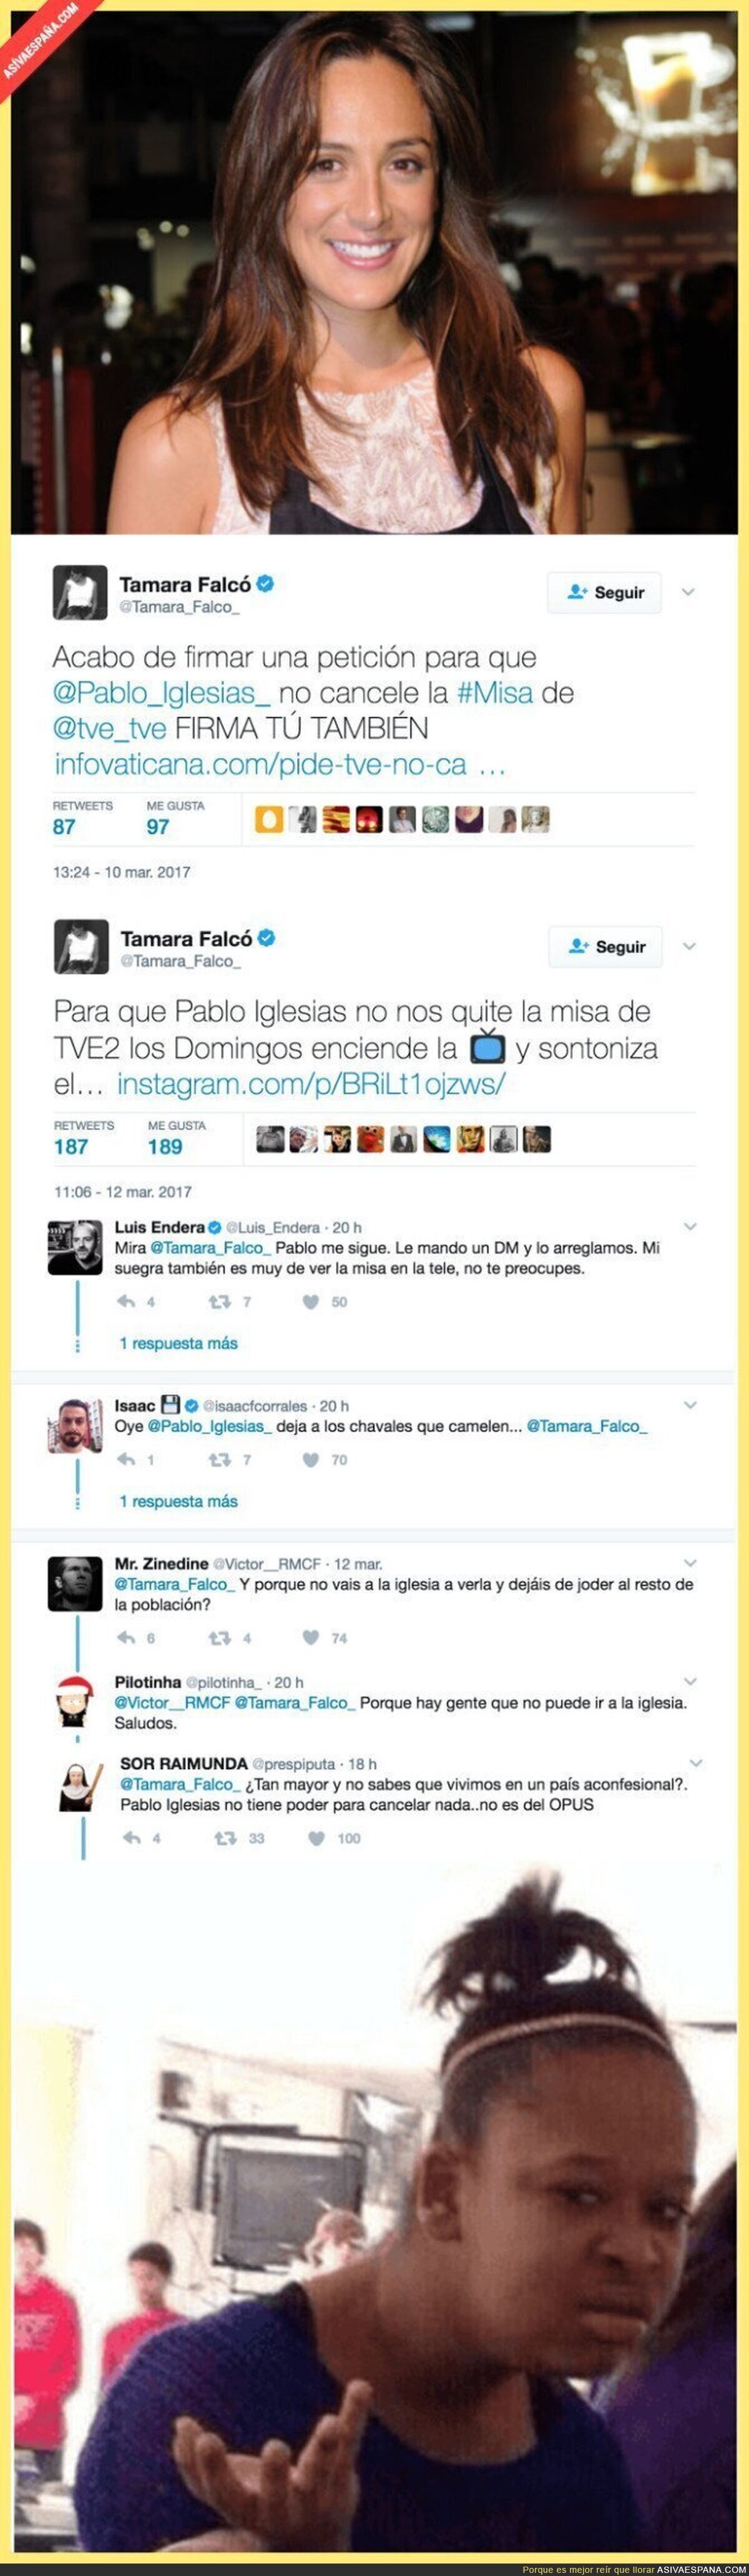 Tamara Falcó la lía en Twitter firmando para que Pablo Iglesias no elimine la Misa de La 2